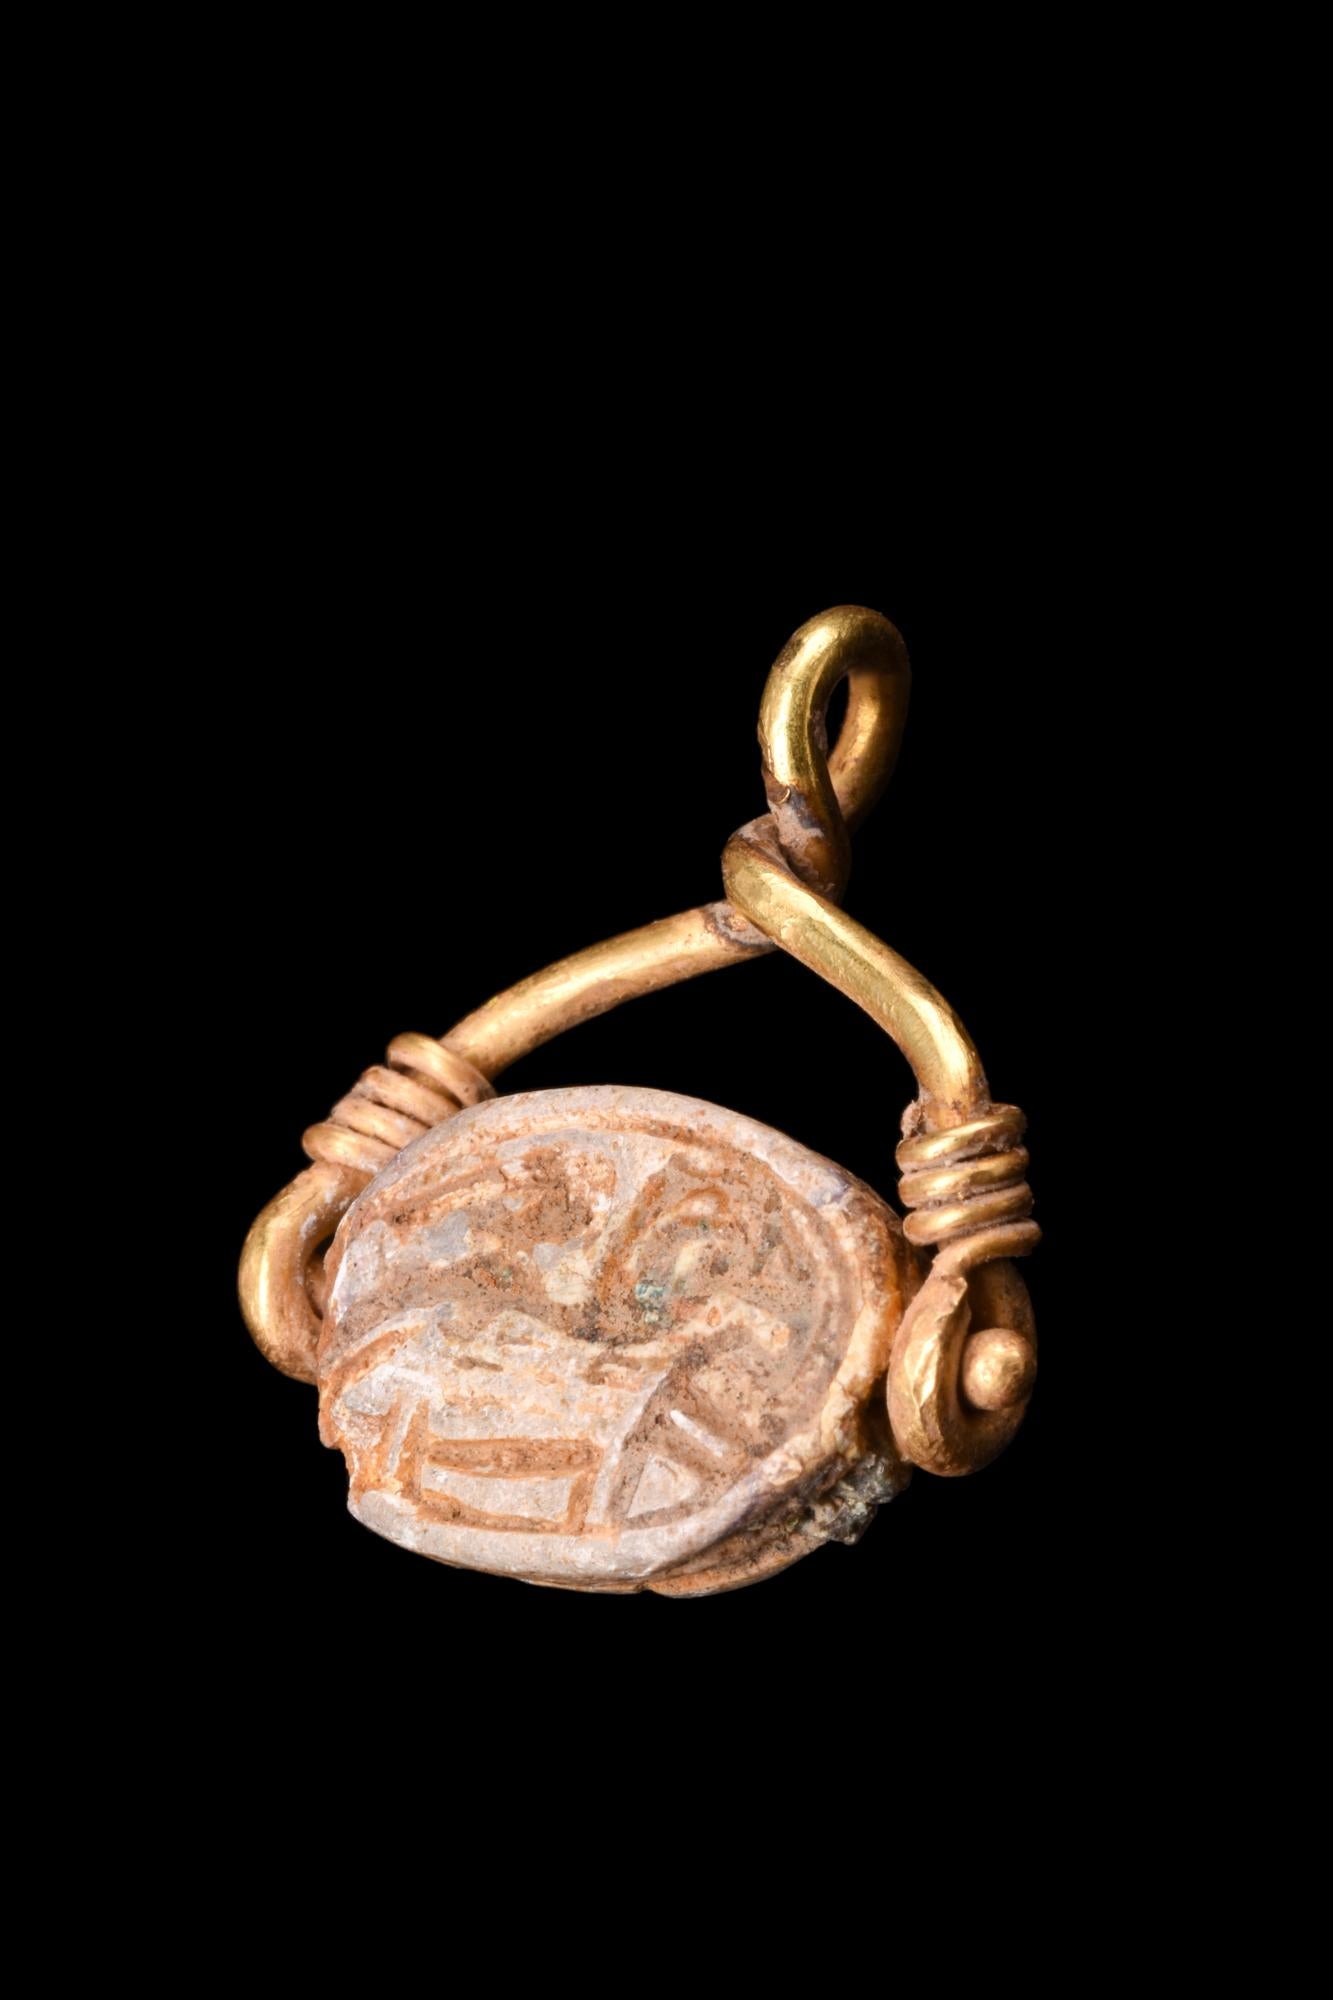 Ein ägyptischer Skarabäus aus Steatit mit eingeritzten Merkmalen und Hieroglyphen auf der Rückseite. Die vordere Anatomie zeigt einen detaillierten Kopf und einen Clypeus mit eingeschnittenen linearen Verzierungen, die den Prothorax und die Elytren